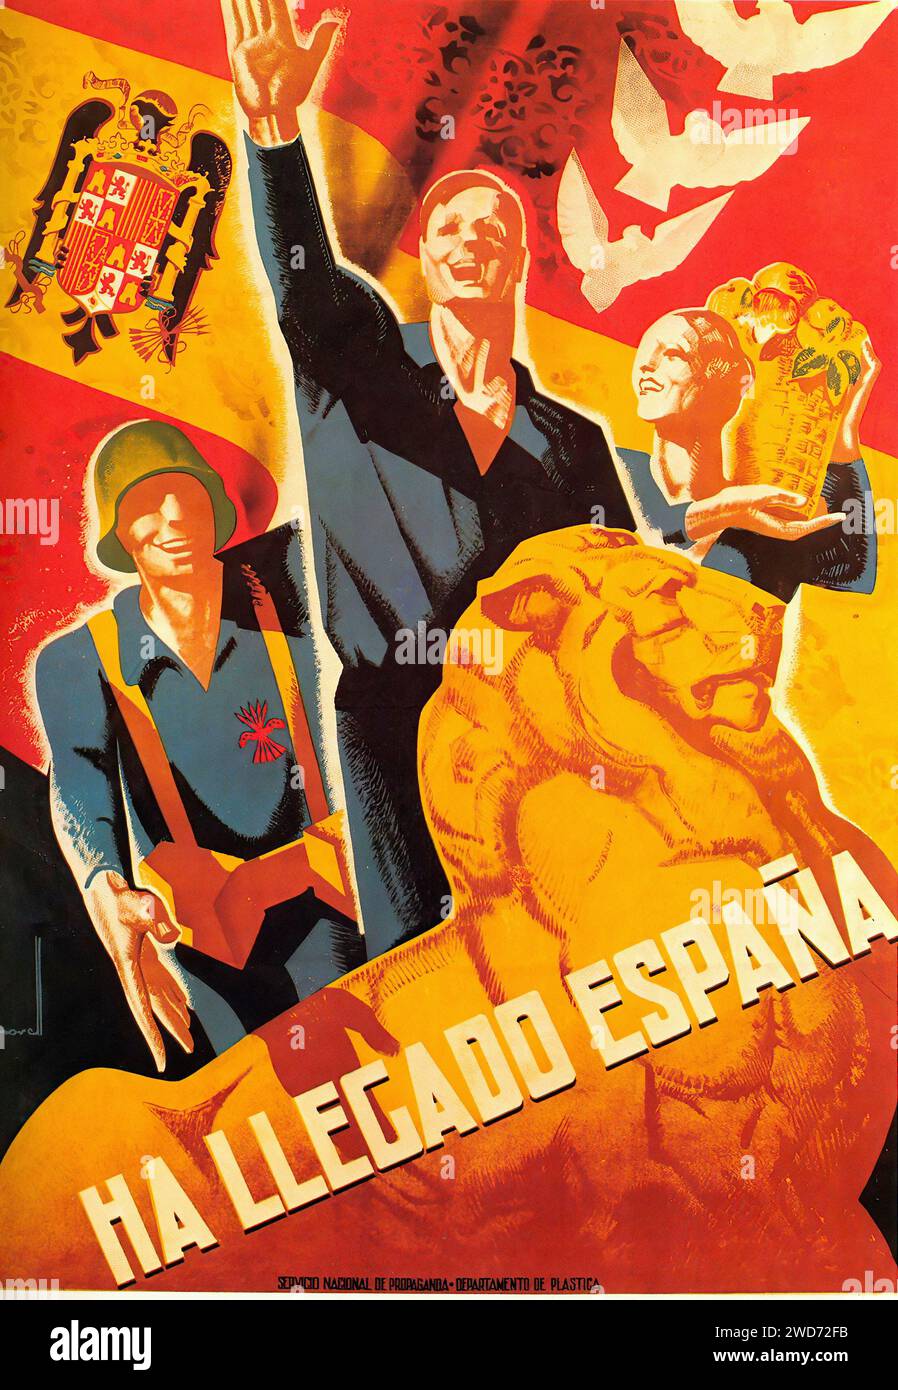 'HA LLEGADO España' 'l'Espagne est arrivée.' Cette image est une affiche vibrante et patriotique de la guerre civile espagnole. Il présente des personnages aux armes levées, un lion rugissant et des symboles du nationalisme espagnol, tels que le drapeau et un emblème. Le style de l'affiche est caractéristique de la propagande nationaliste de l'époque, avec des couleurs vives et une composition dynamique destinées à évoquer un sentiment de fierté et de résurgence - affiche de propagande de la guerre civile espagnole (Guerra civil Española) Banque D'Images